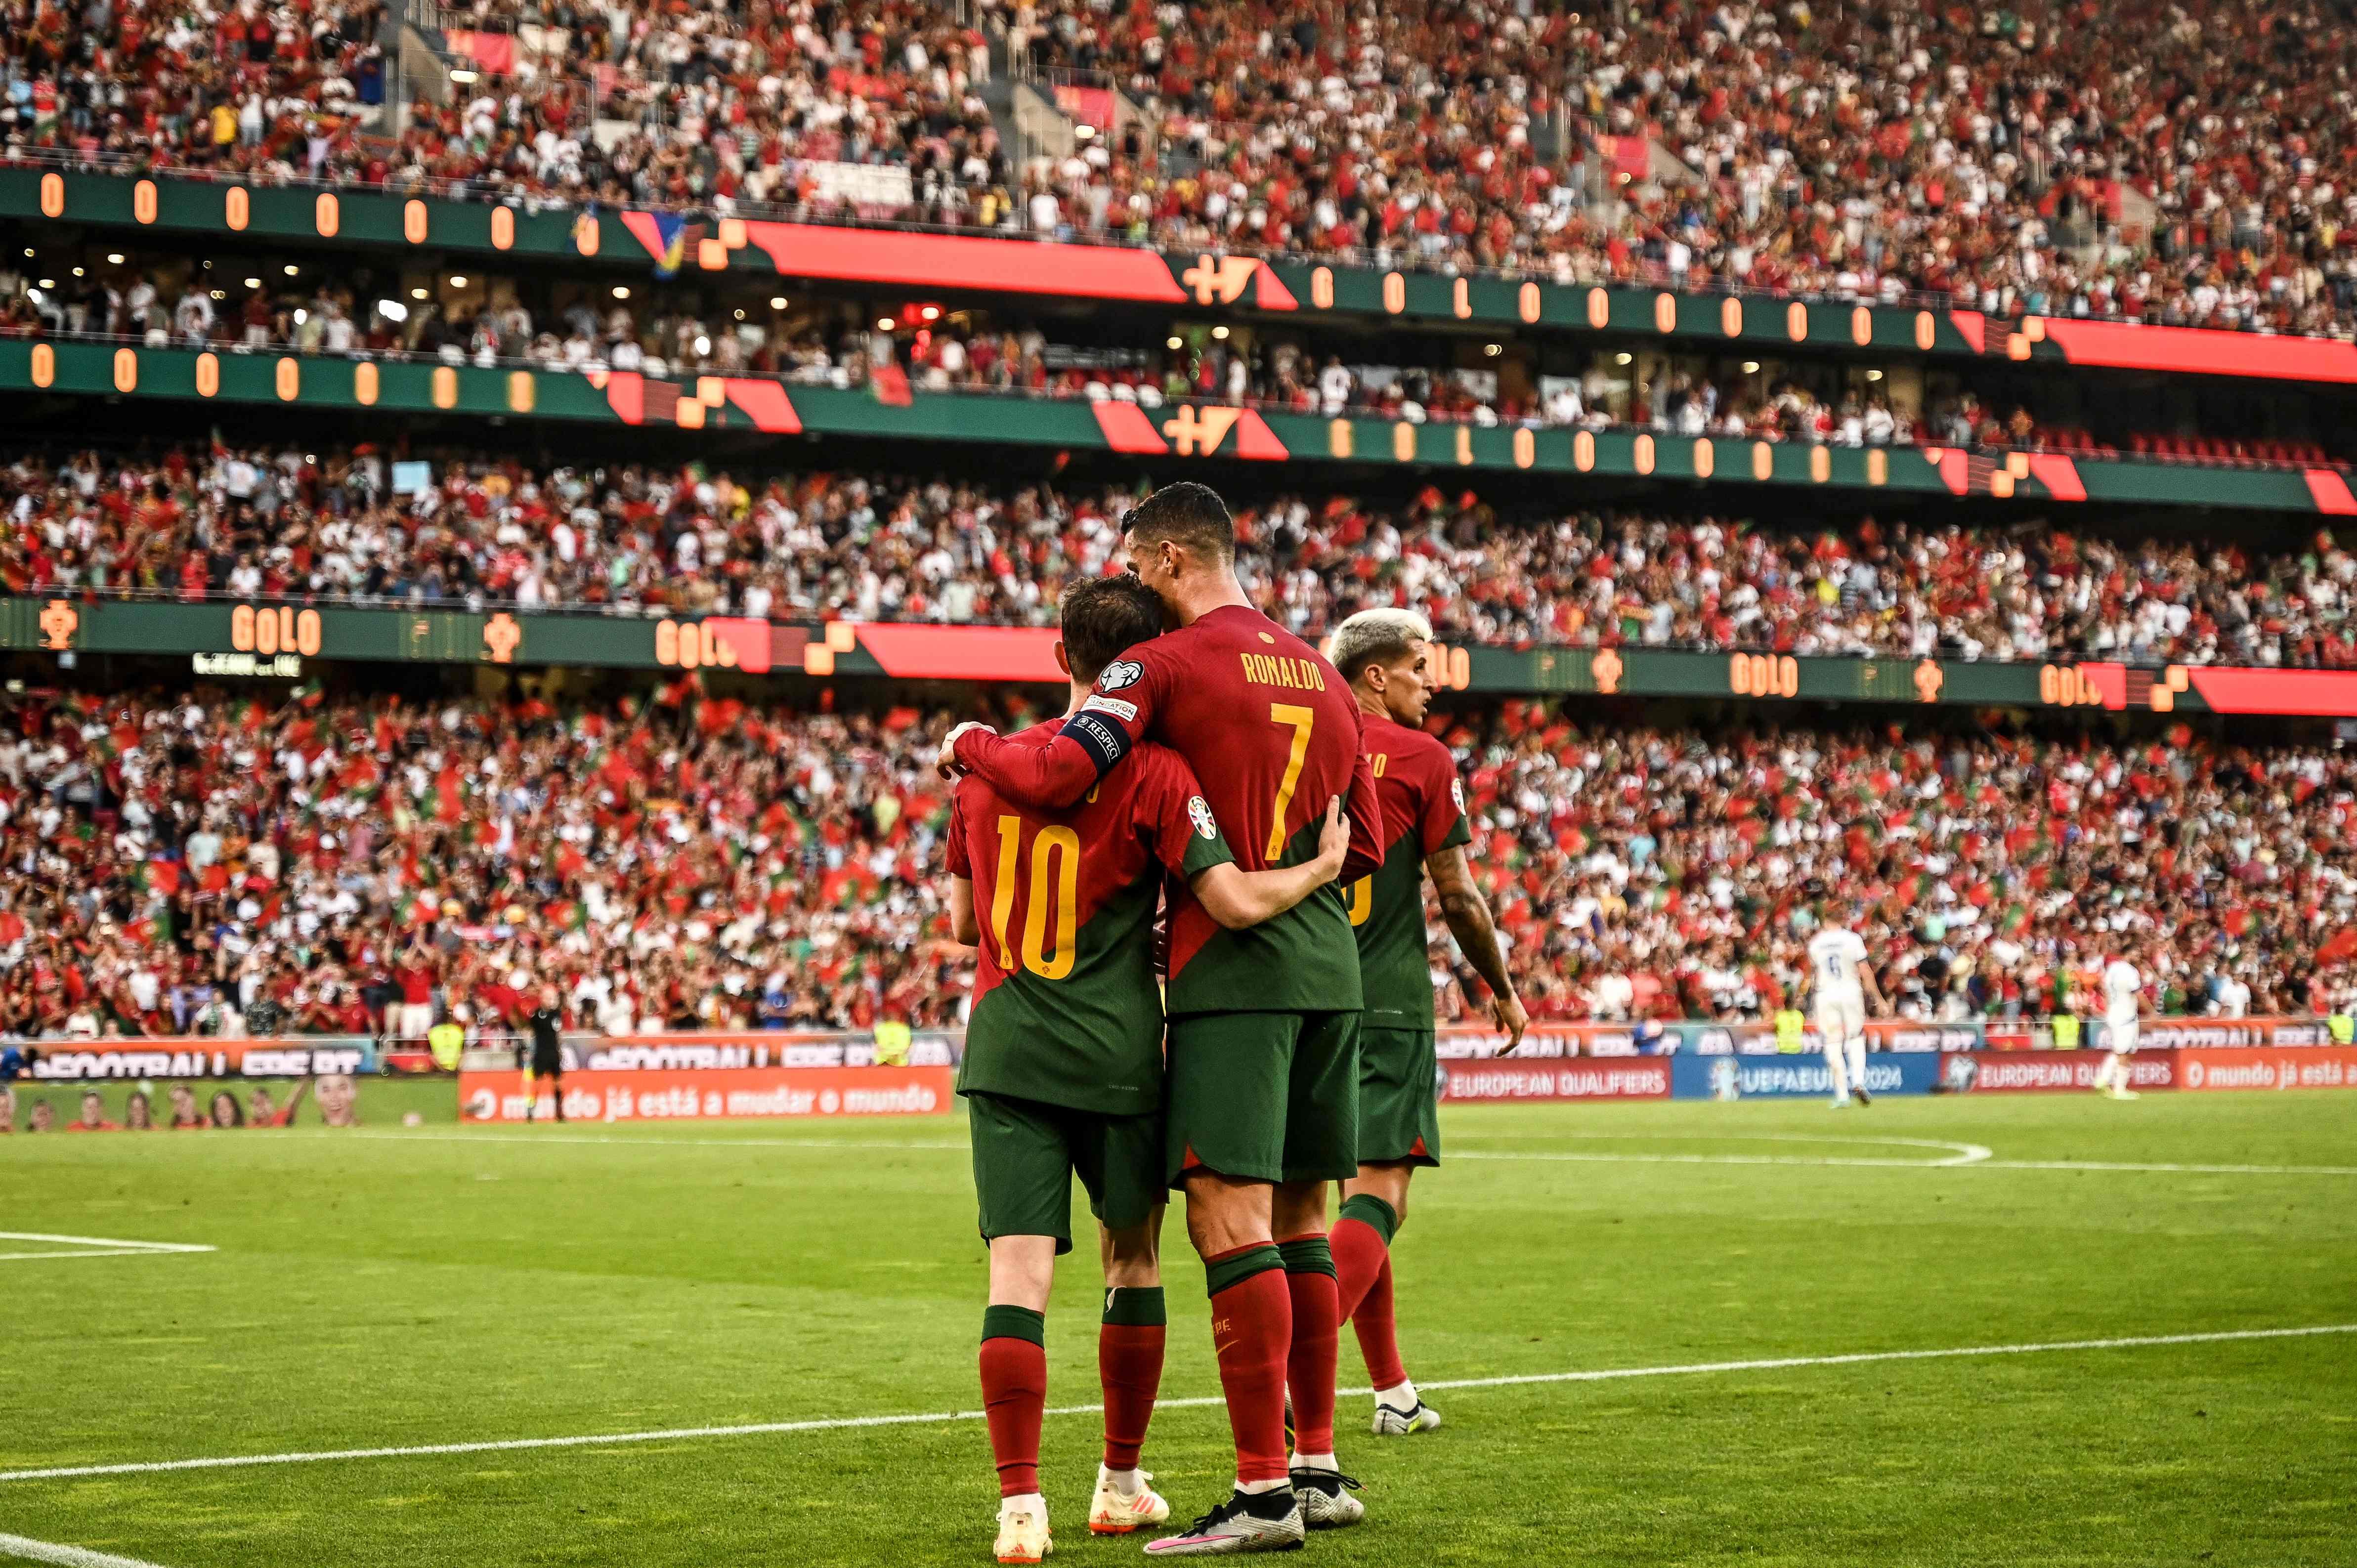 Seleções de Portugal - 7 jogos, 7 vitórias e 1 bilhete para o Euro!  #VesteABandeira 7 matches, 7 wins and 1 ticket to the Euro! #WearTheFlag